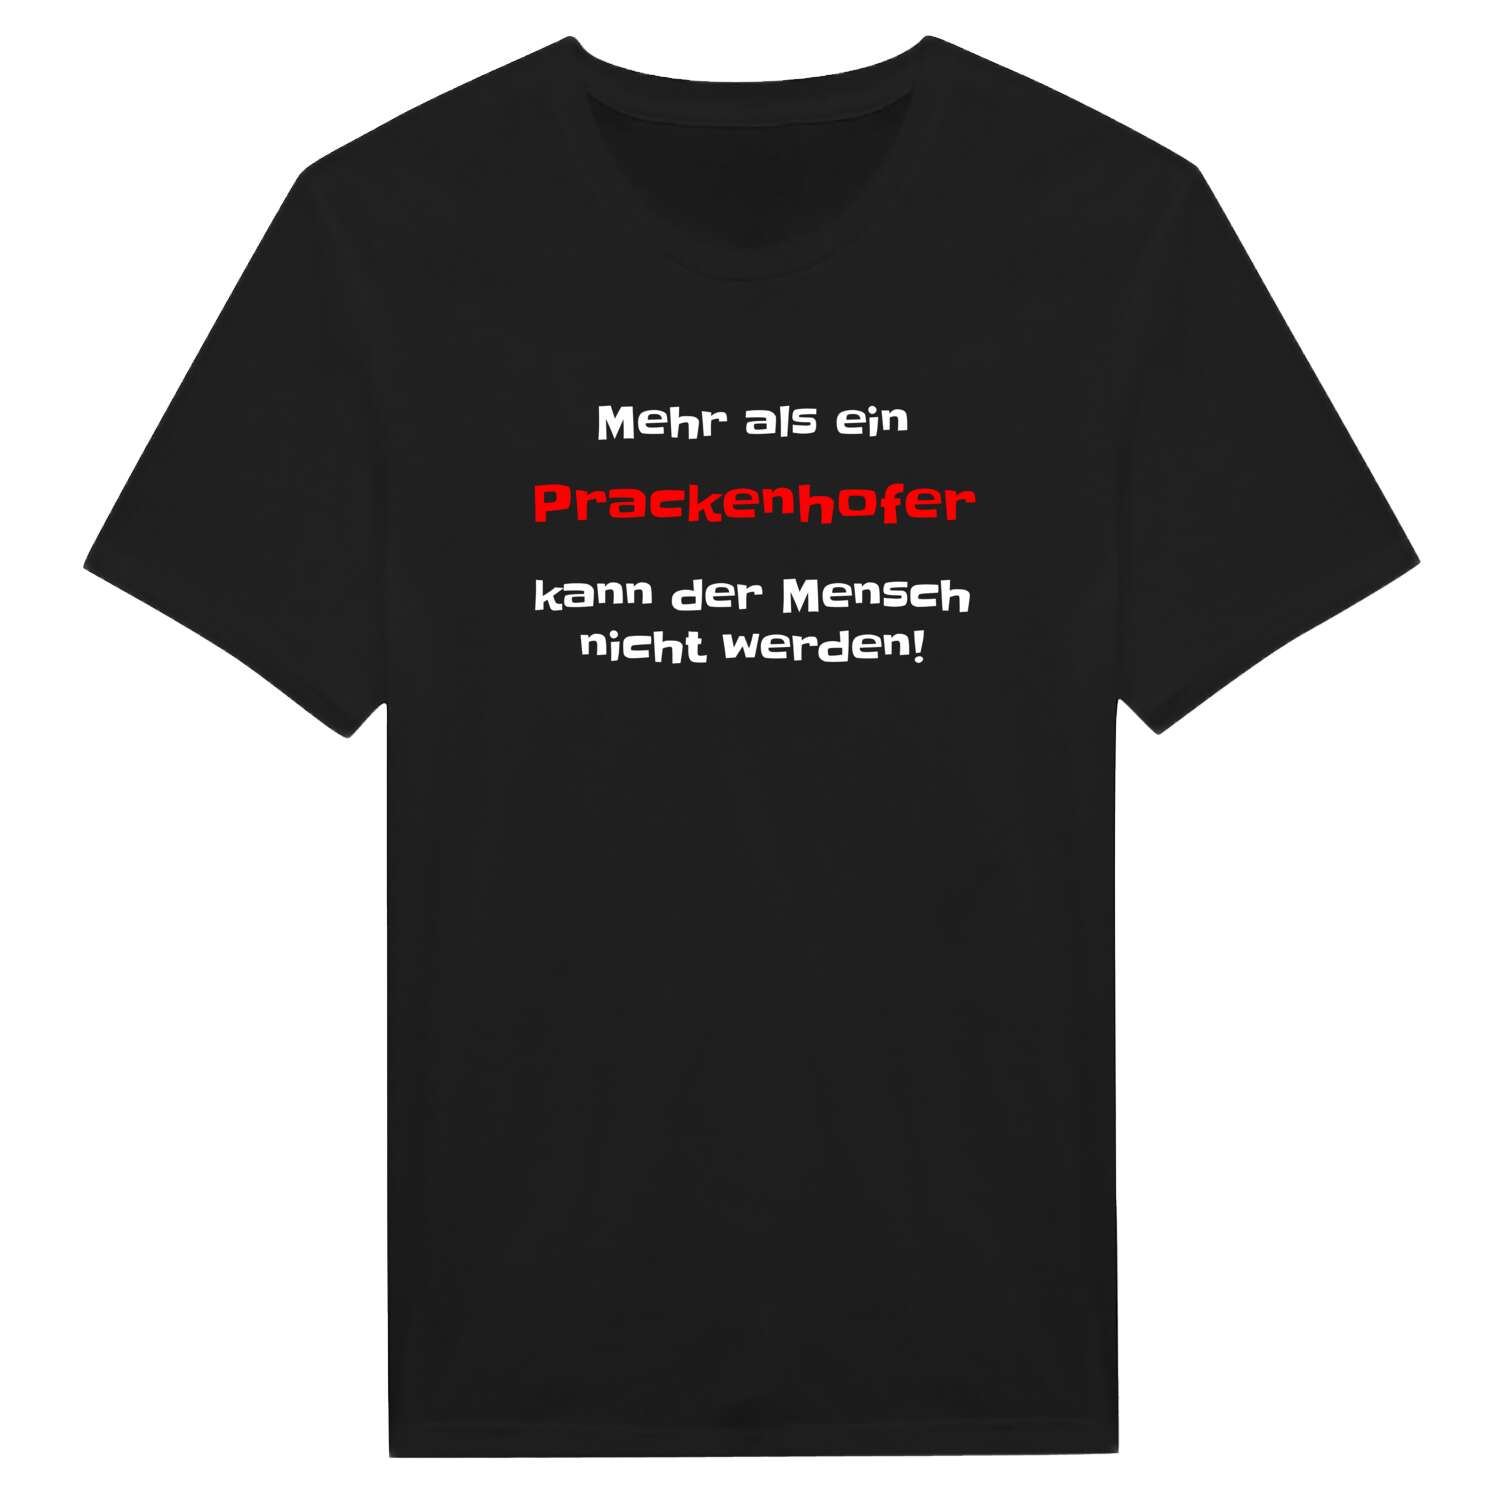 Prackenhof T-Shirt »Mehr als ein«